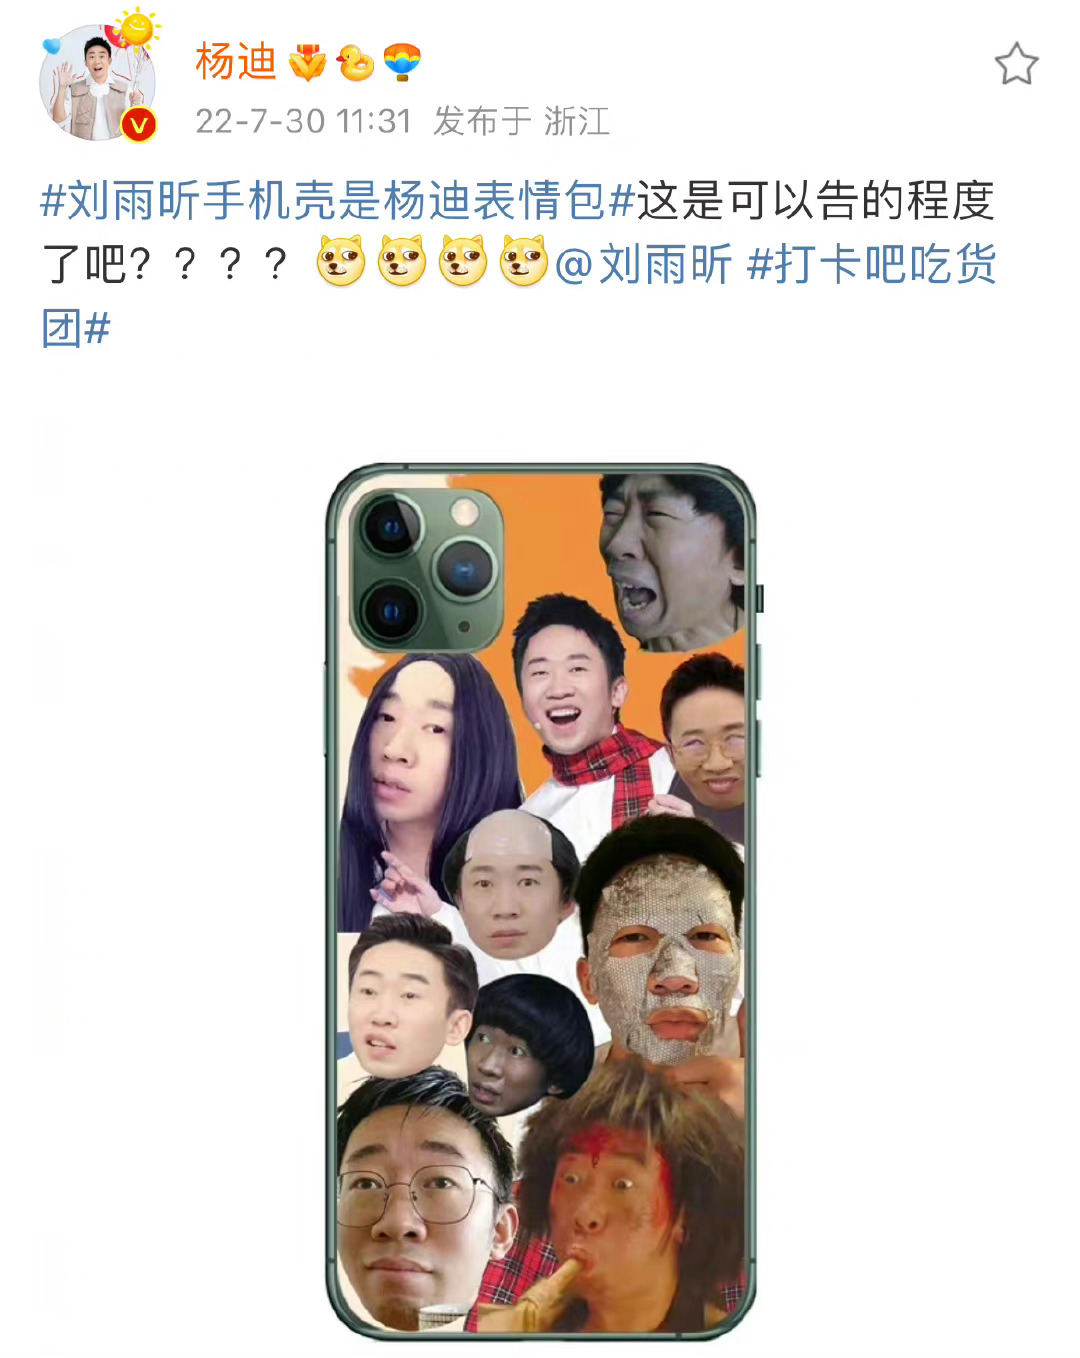 刘雨欣的手机壳是杨迪的表情符号